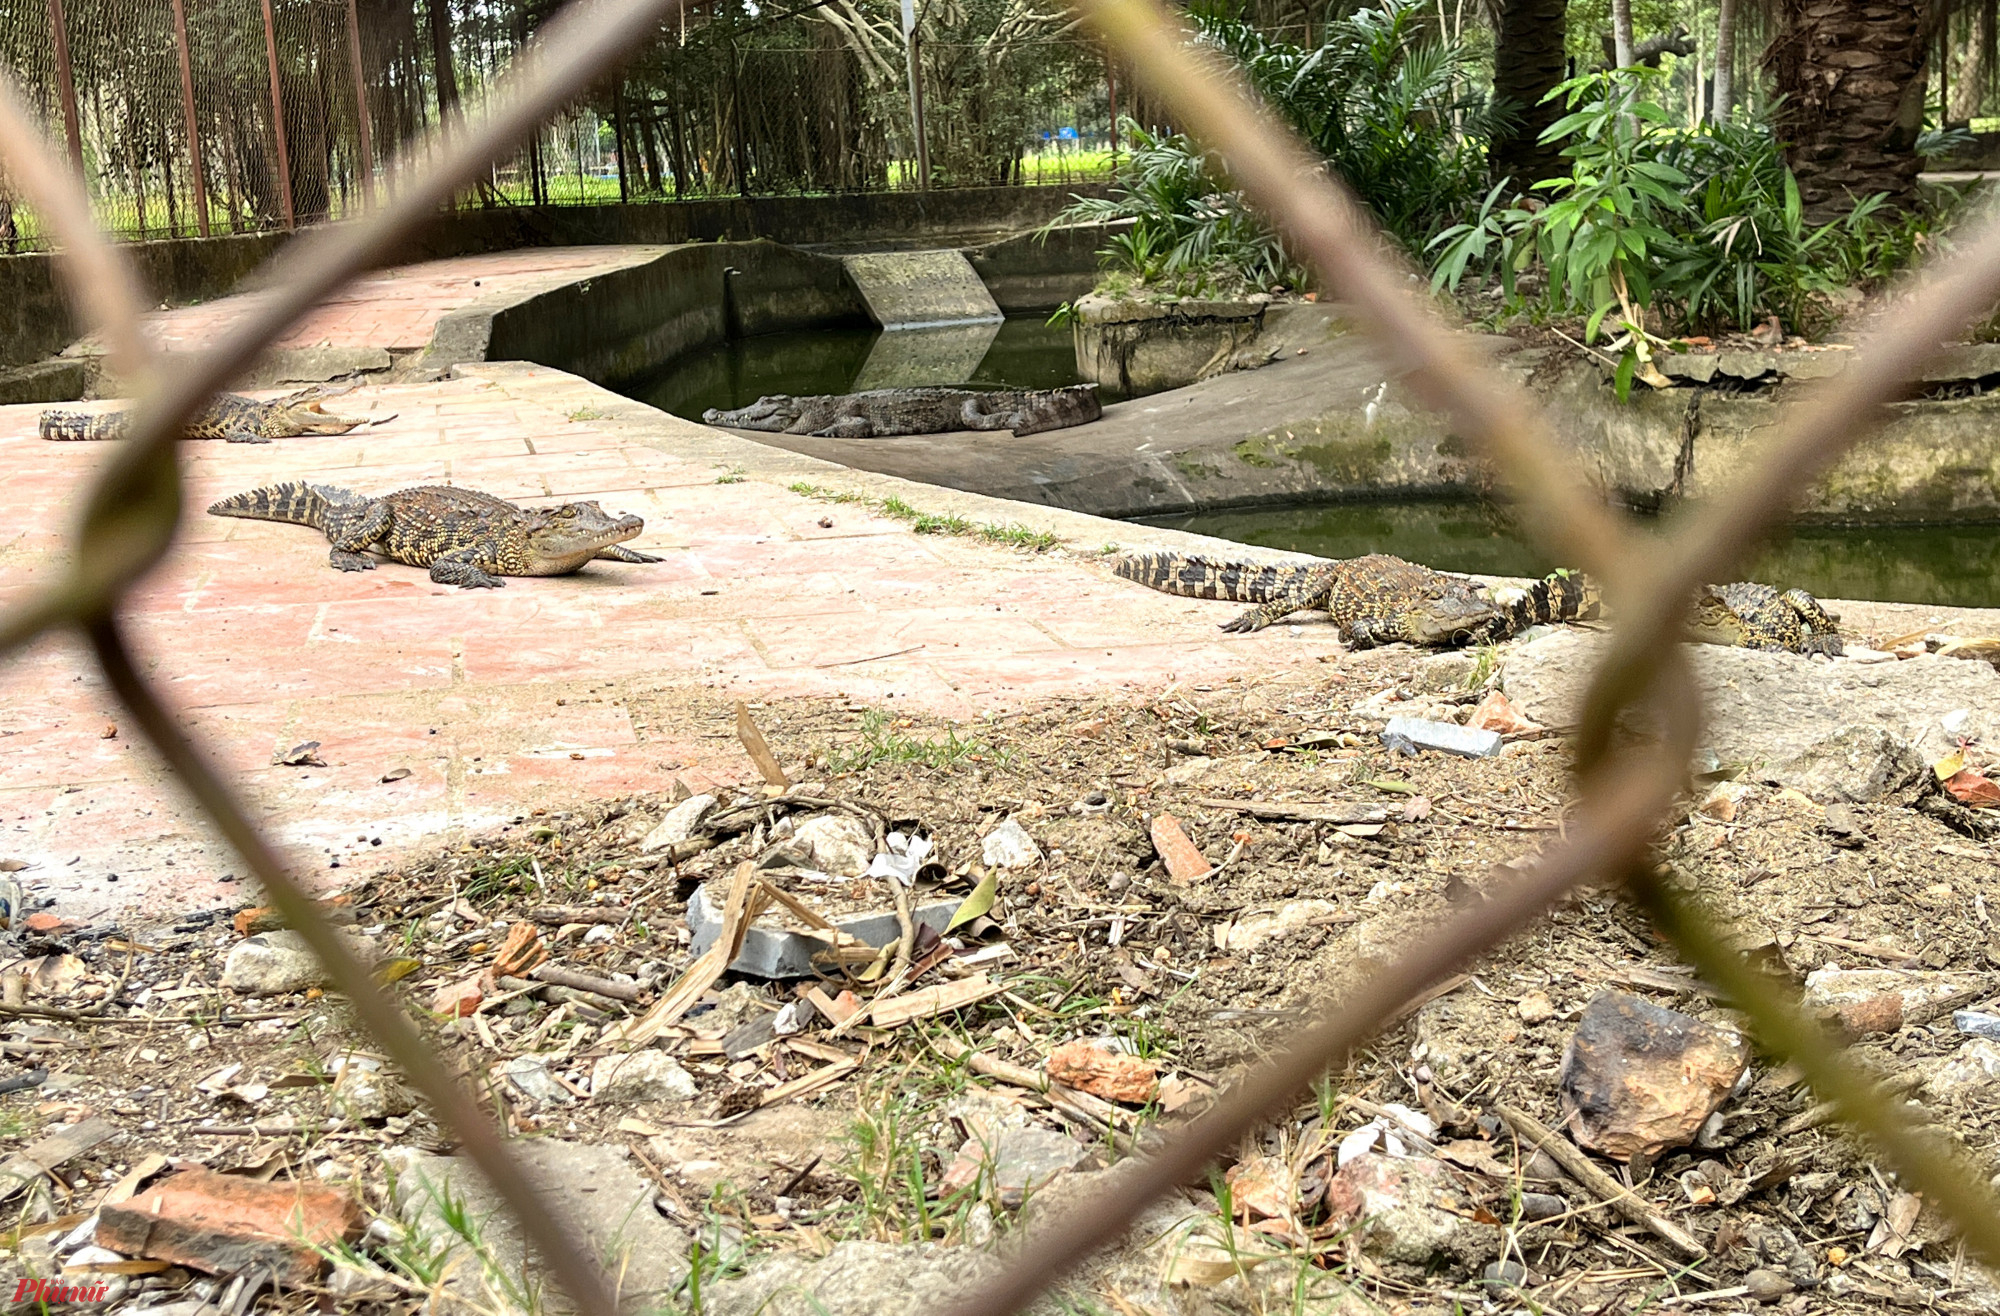 Hơn 3 năm chờ đợi, đàn cá sấu ở Công viên trung tâm TP Vinh vẫn chưa tìm được nơi để thả về tự nhiên - Ảnh: Phan Ngọc